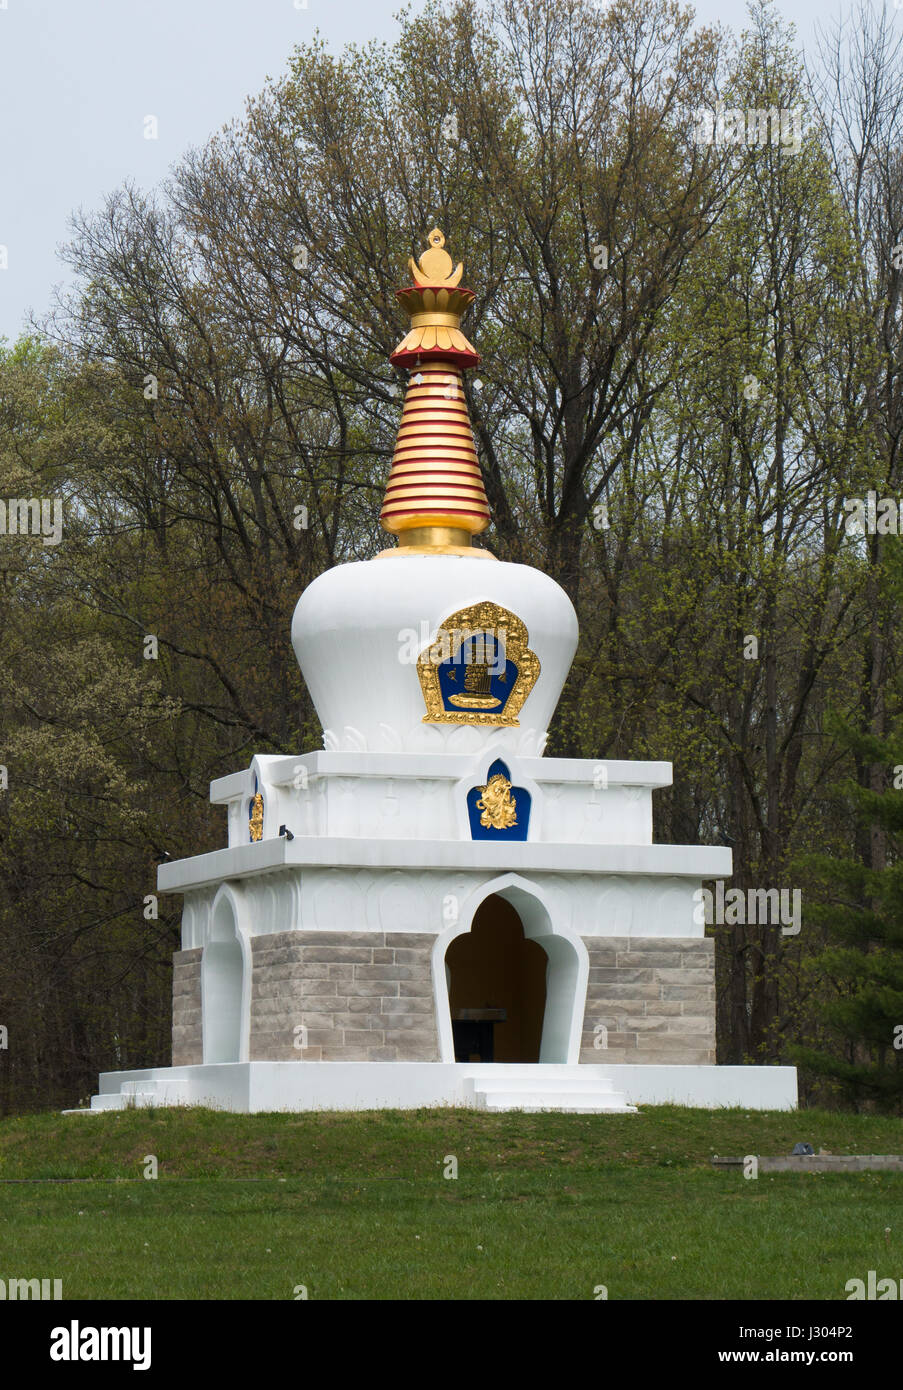 Dédiés au peuple du Tibet, le peuple tibétain bouddhiste de Mongolie à Bloomington, Indiana, offre un cadre paisible pour la méditation et Banque D'Images